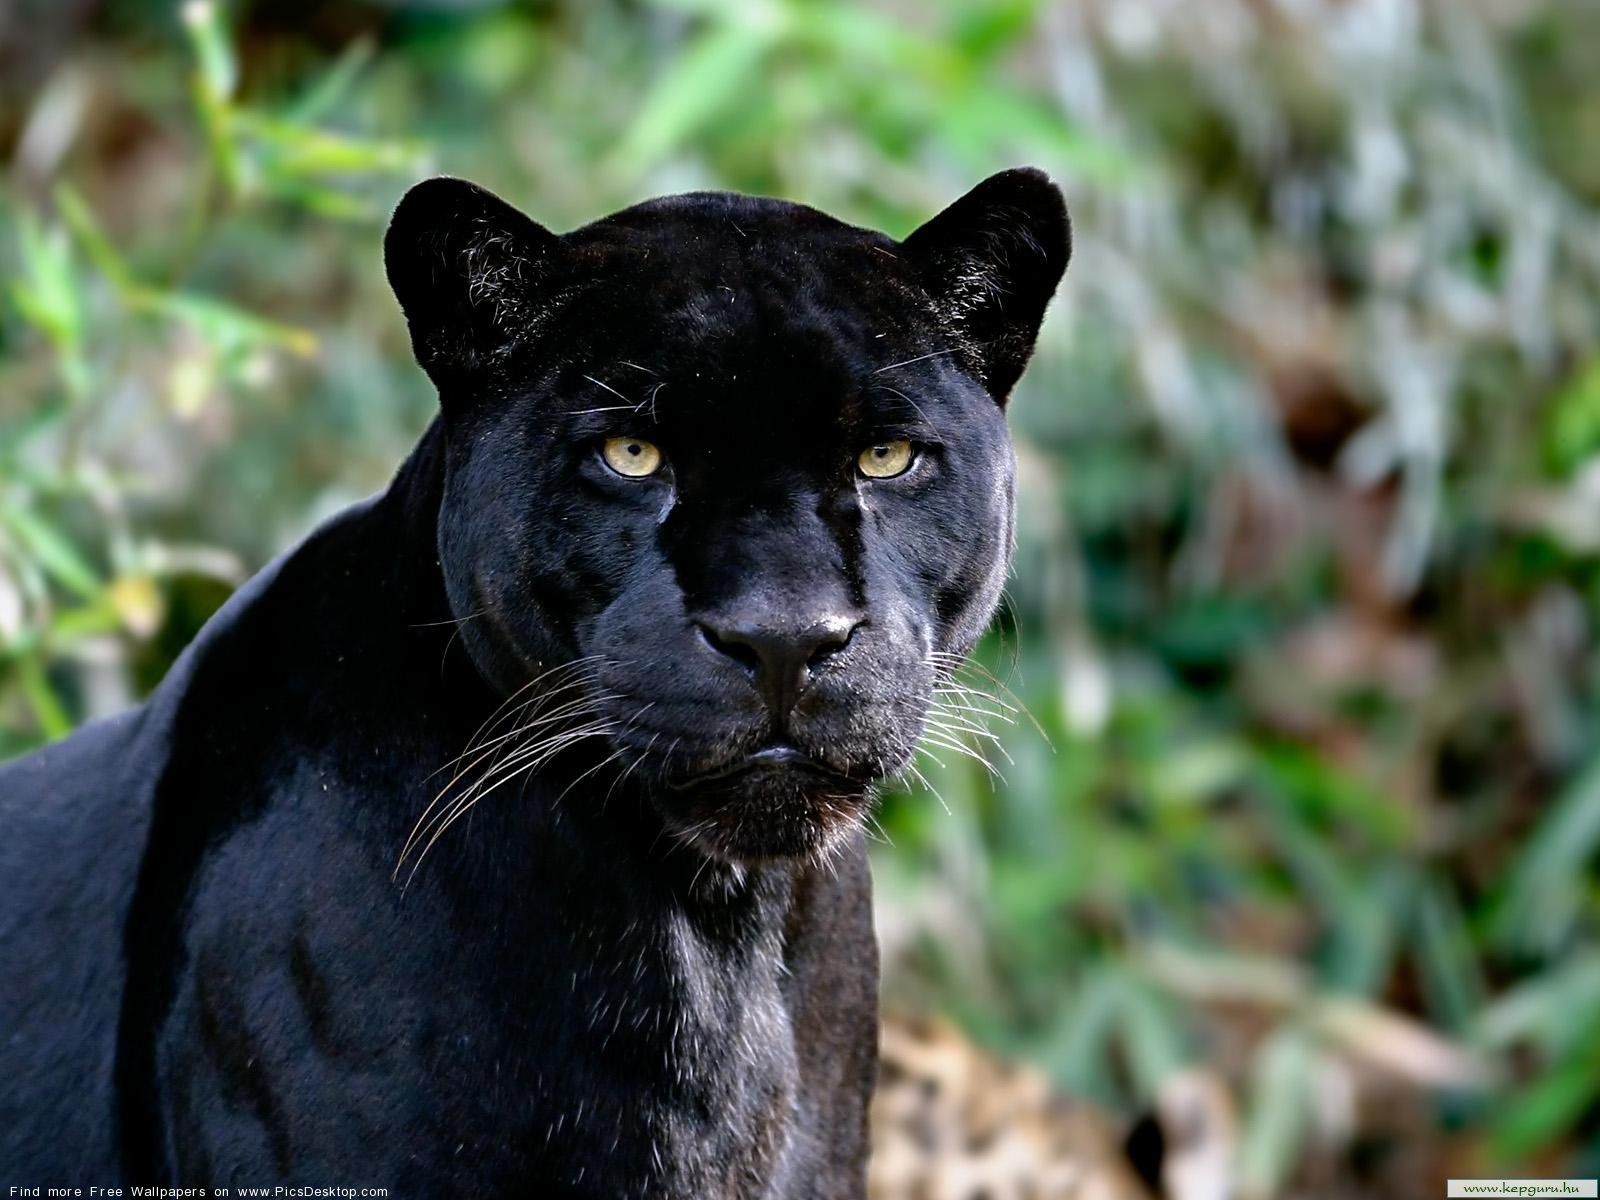 Black panther - Wild Animals - Free Desktop Wallpaper picture #46